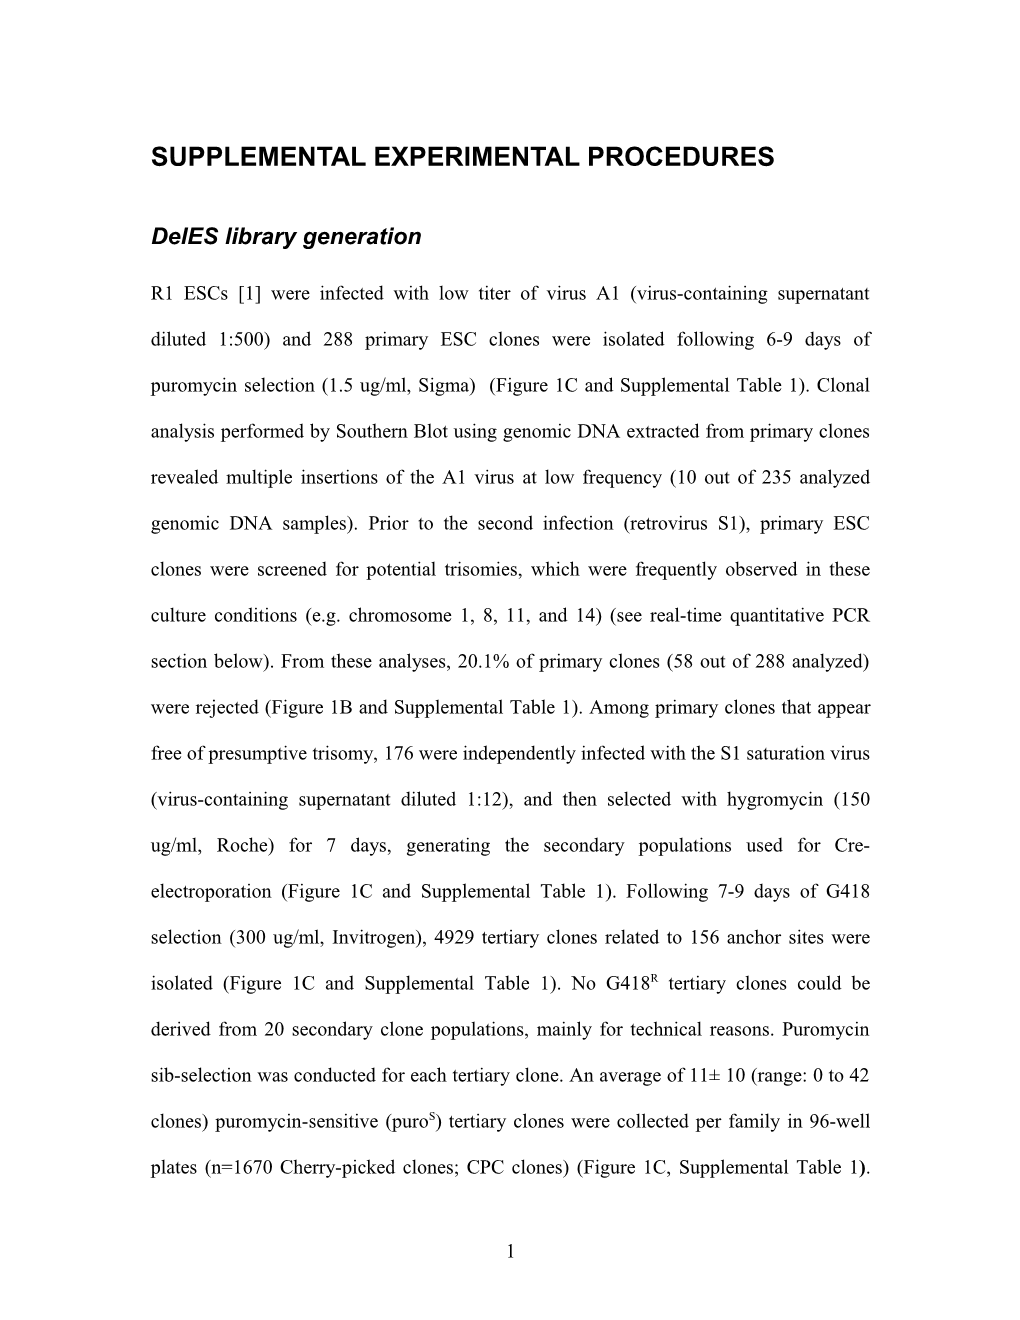 Supplemental Experimental Procedures s3